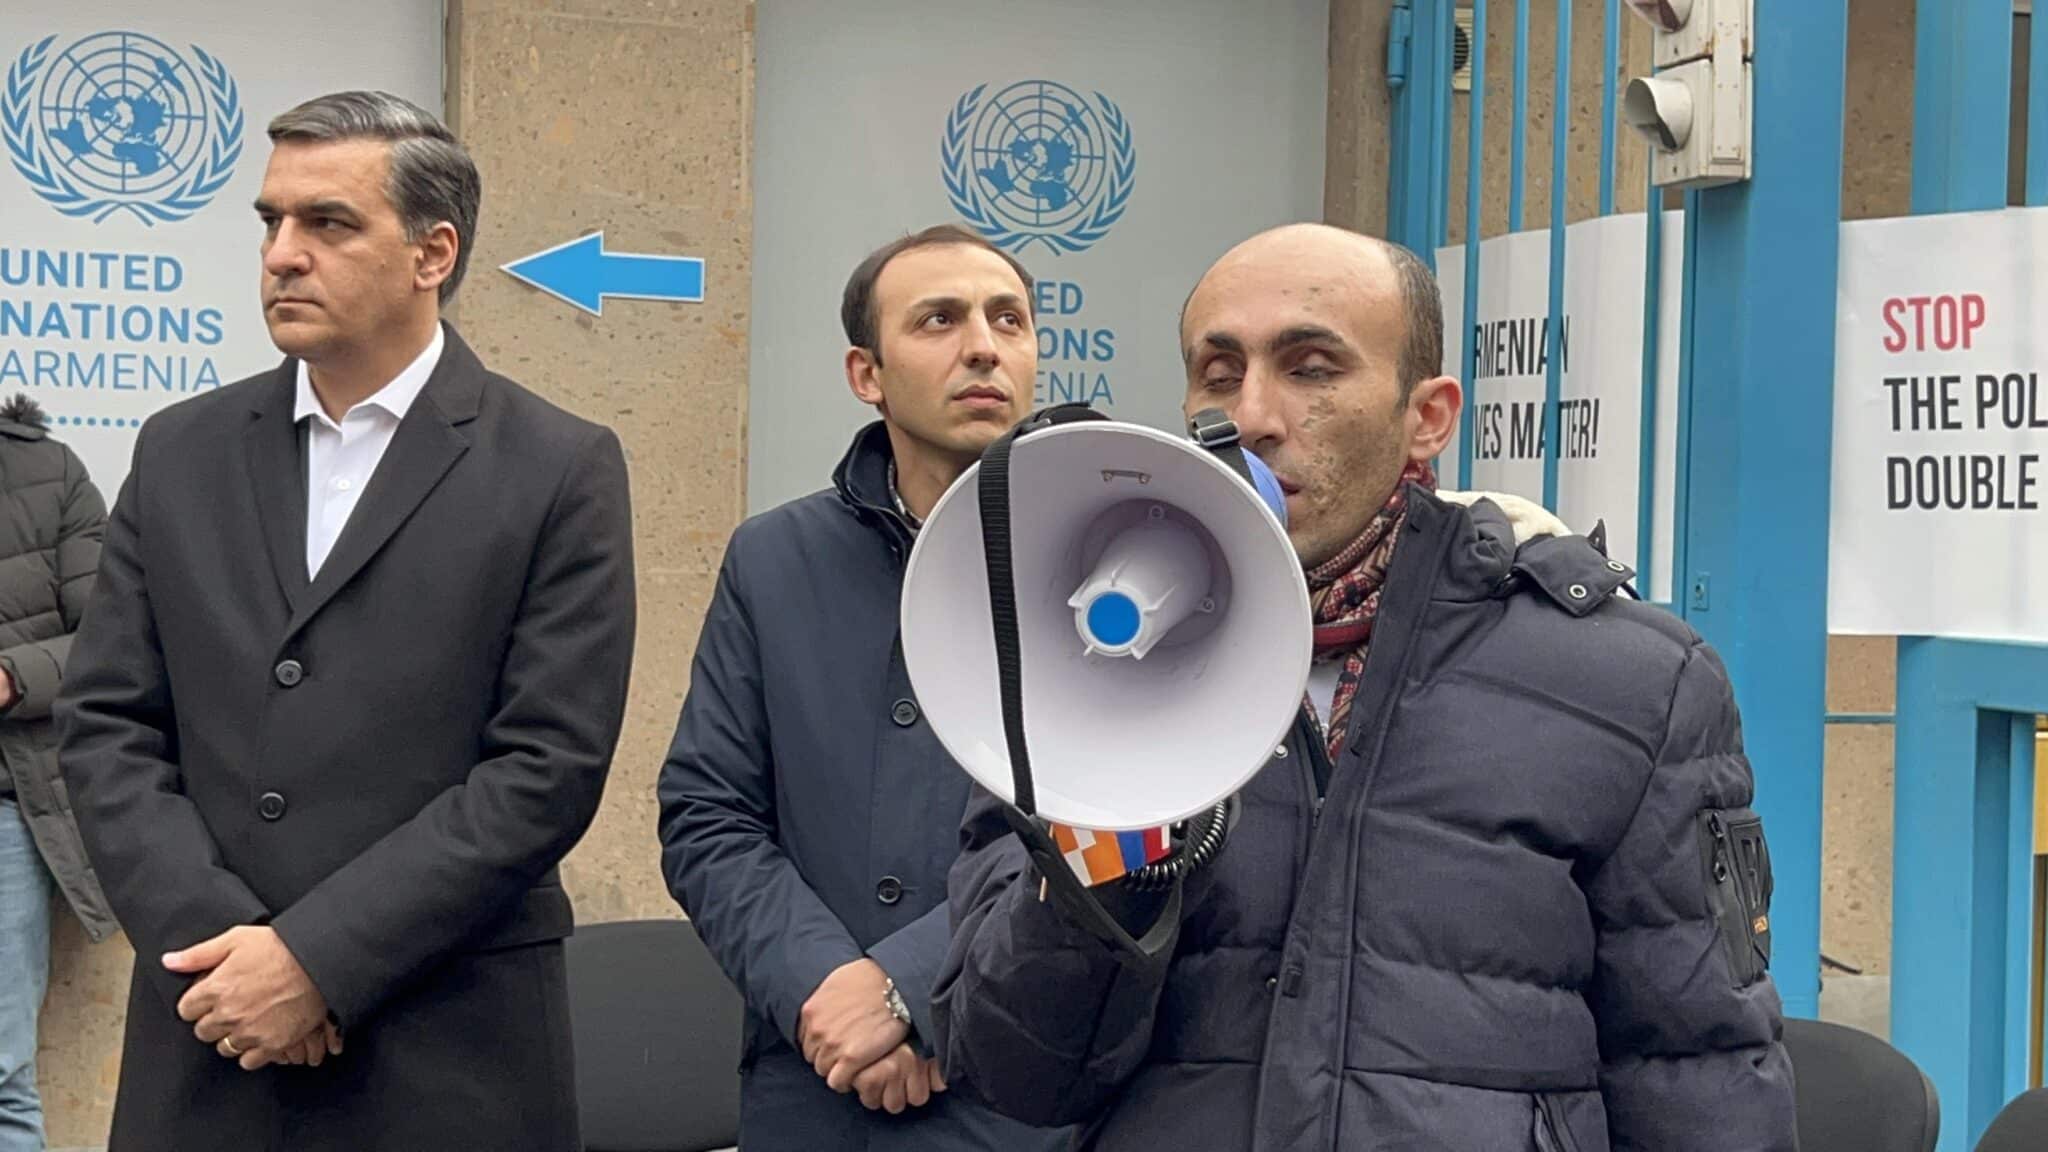 Արտակ Բեգլարյանը դադարեցնում է նստացույցը ՄԱԿ-ի գրասենյակի առաջ